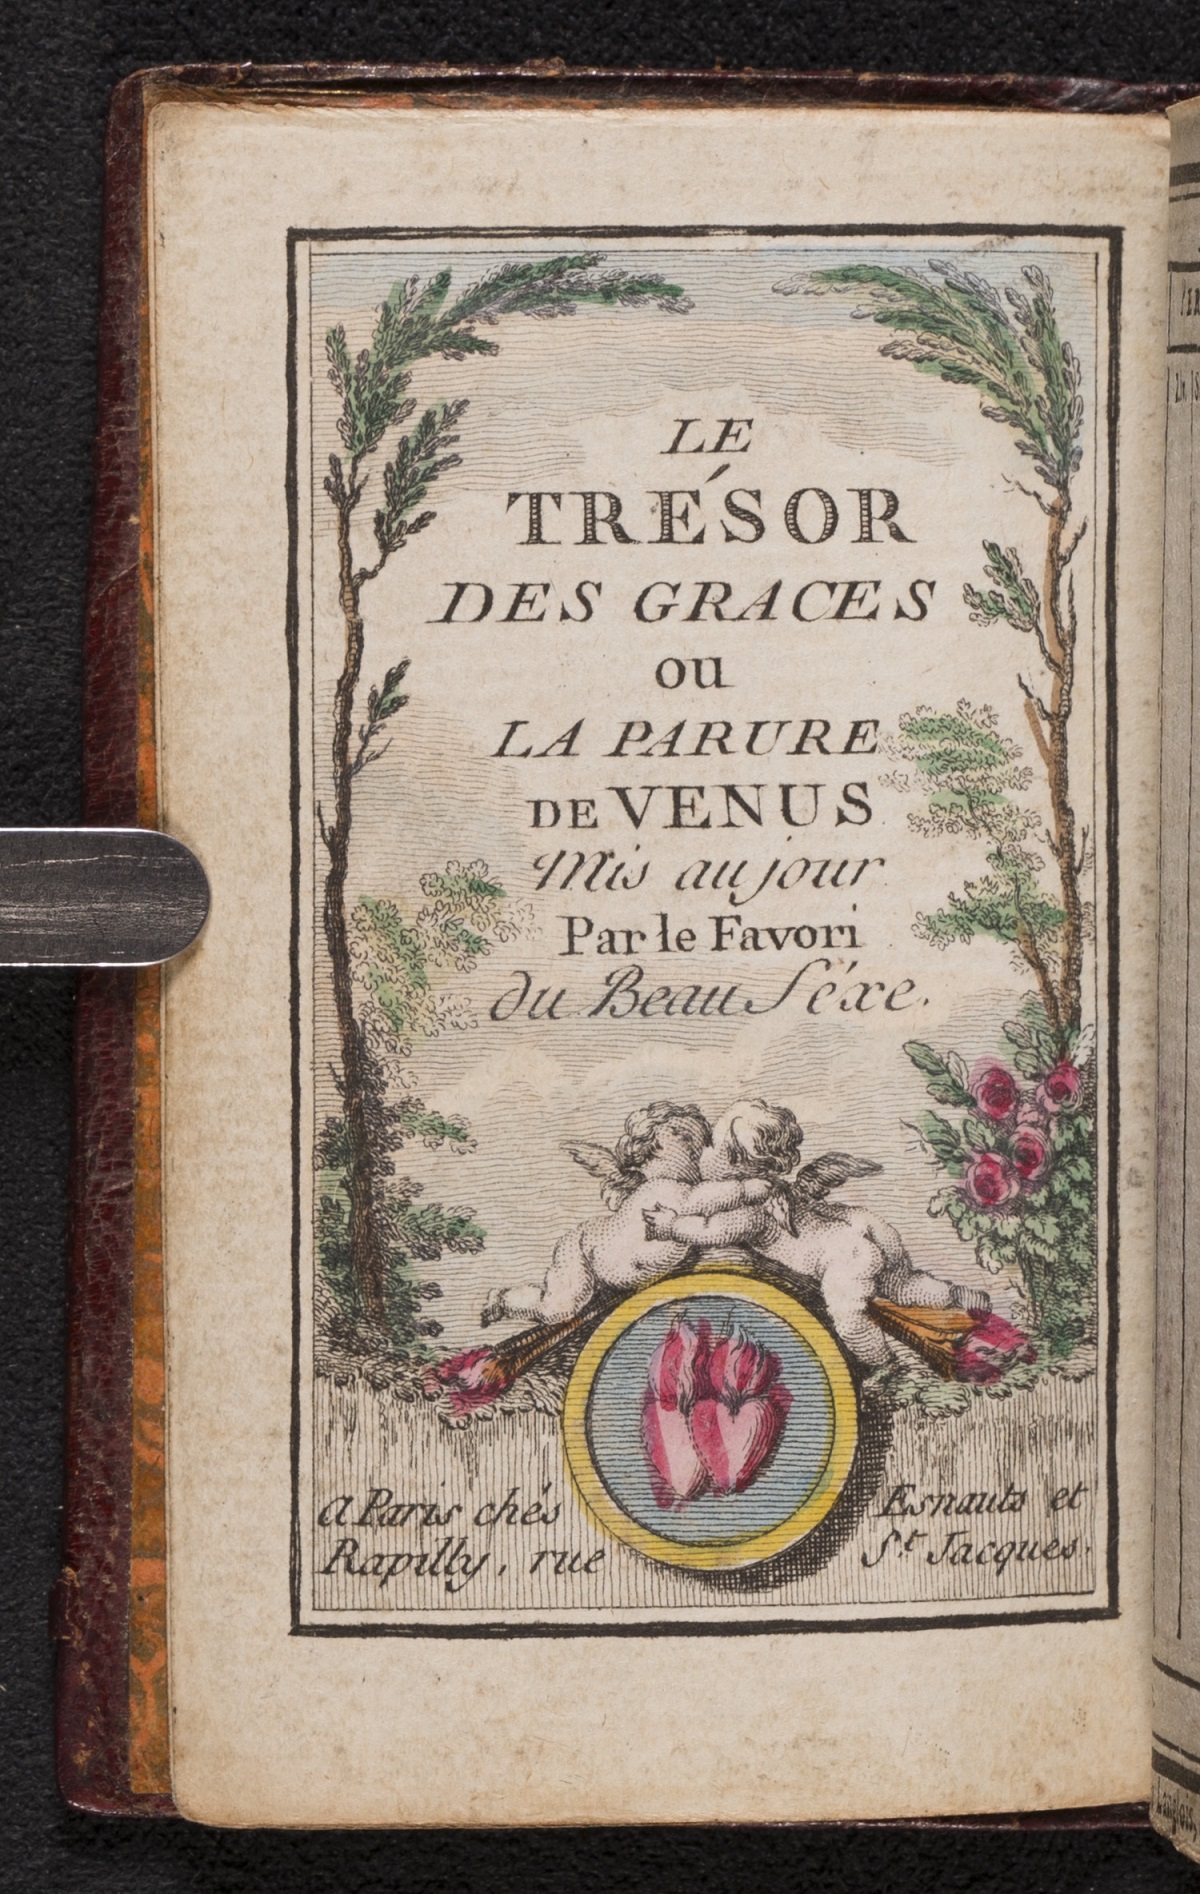 Volume bearing the title Le Trésor des Trésors (The Treasure of